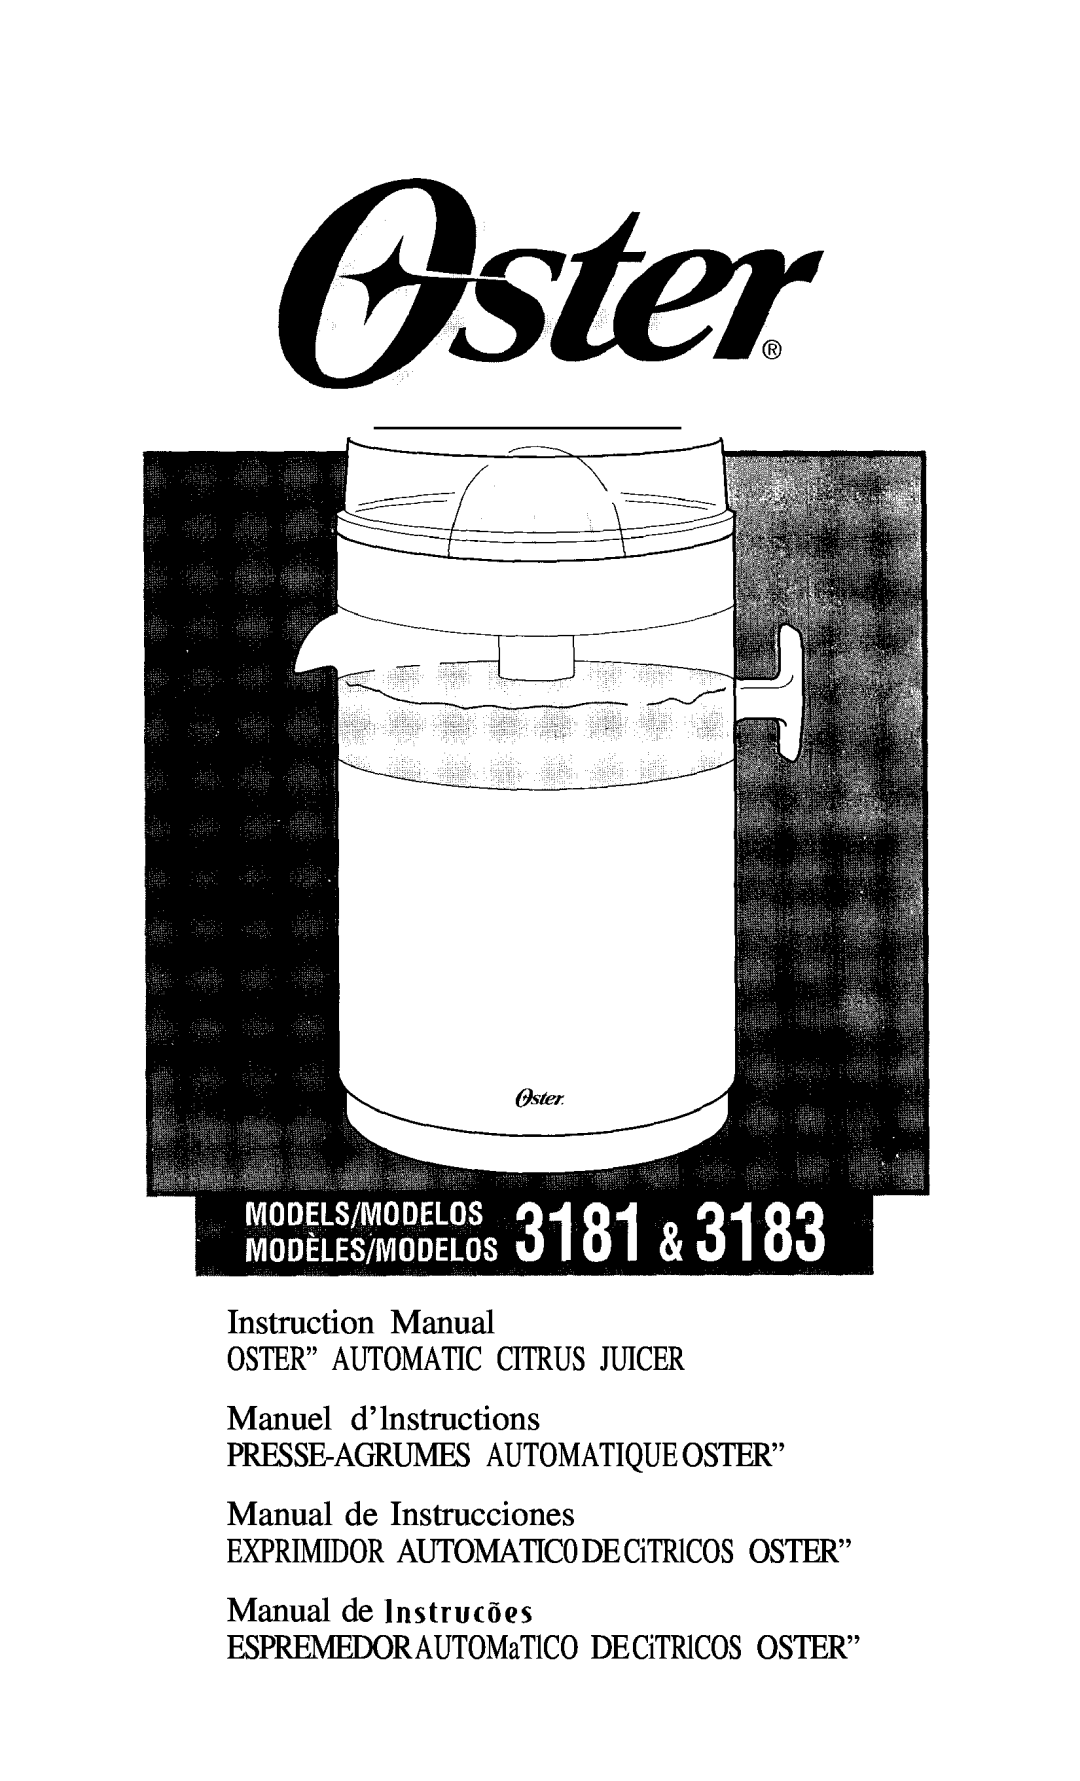 Oster 3183, 3181 instruction manual Manuel d’lnstructions, Presse-Agrumesautomatiqueoster”, Manual de Instrucciones 